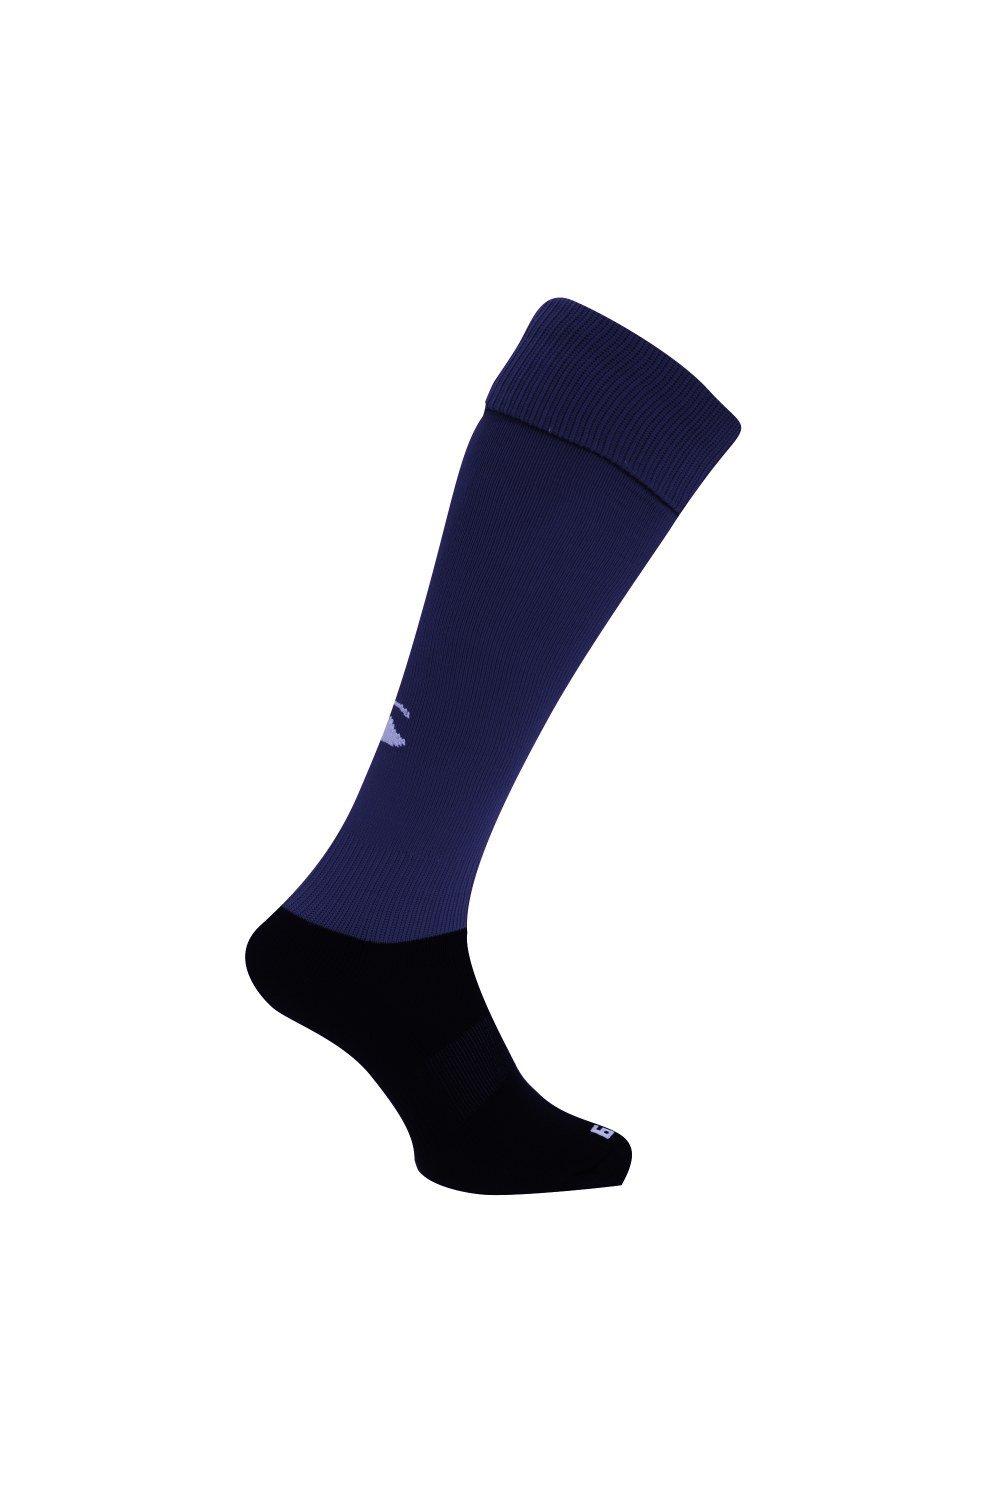 Спортивные носки для игры в регби Canterbury, темно-синий чёрные спортивные брюки overcome с контрастными деталями